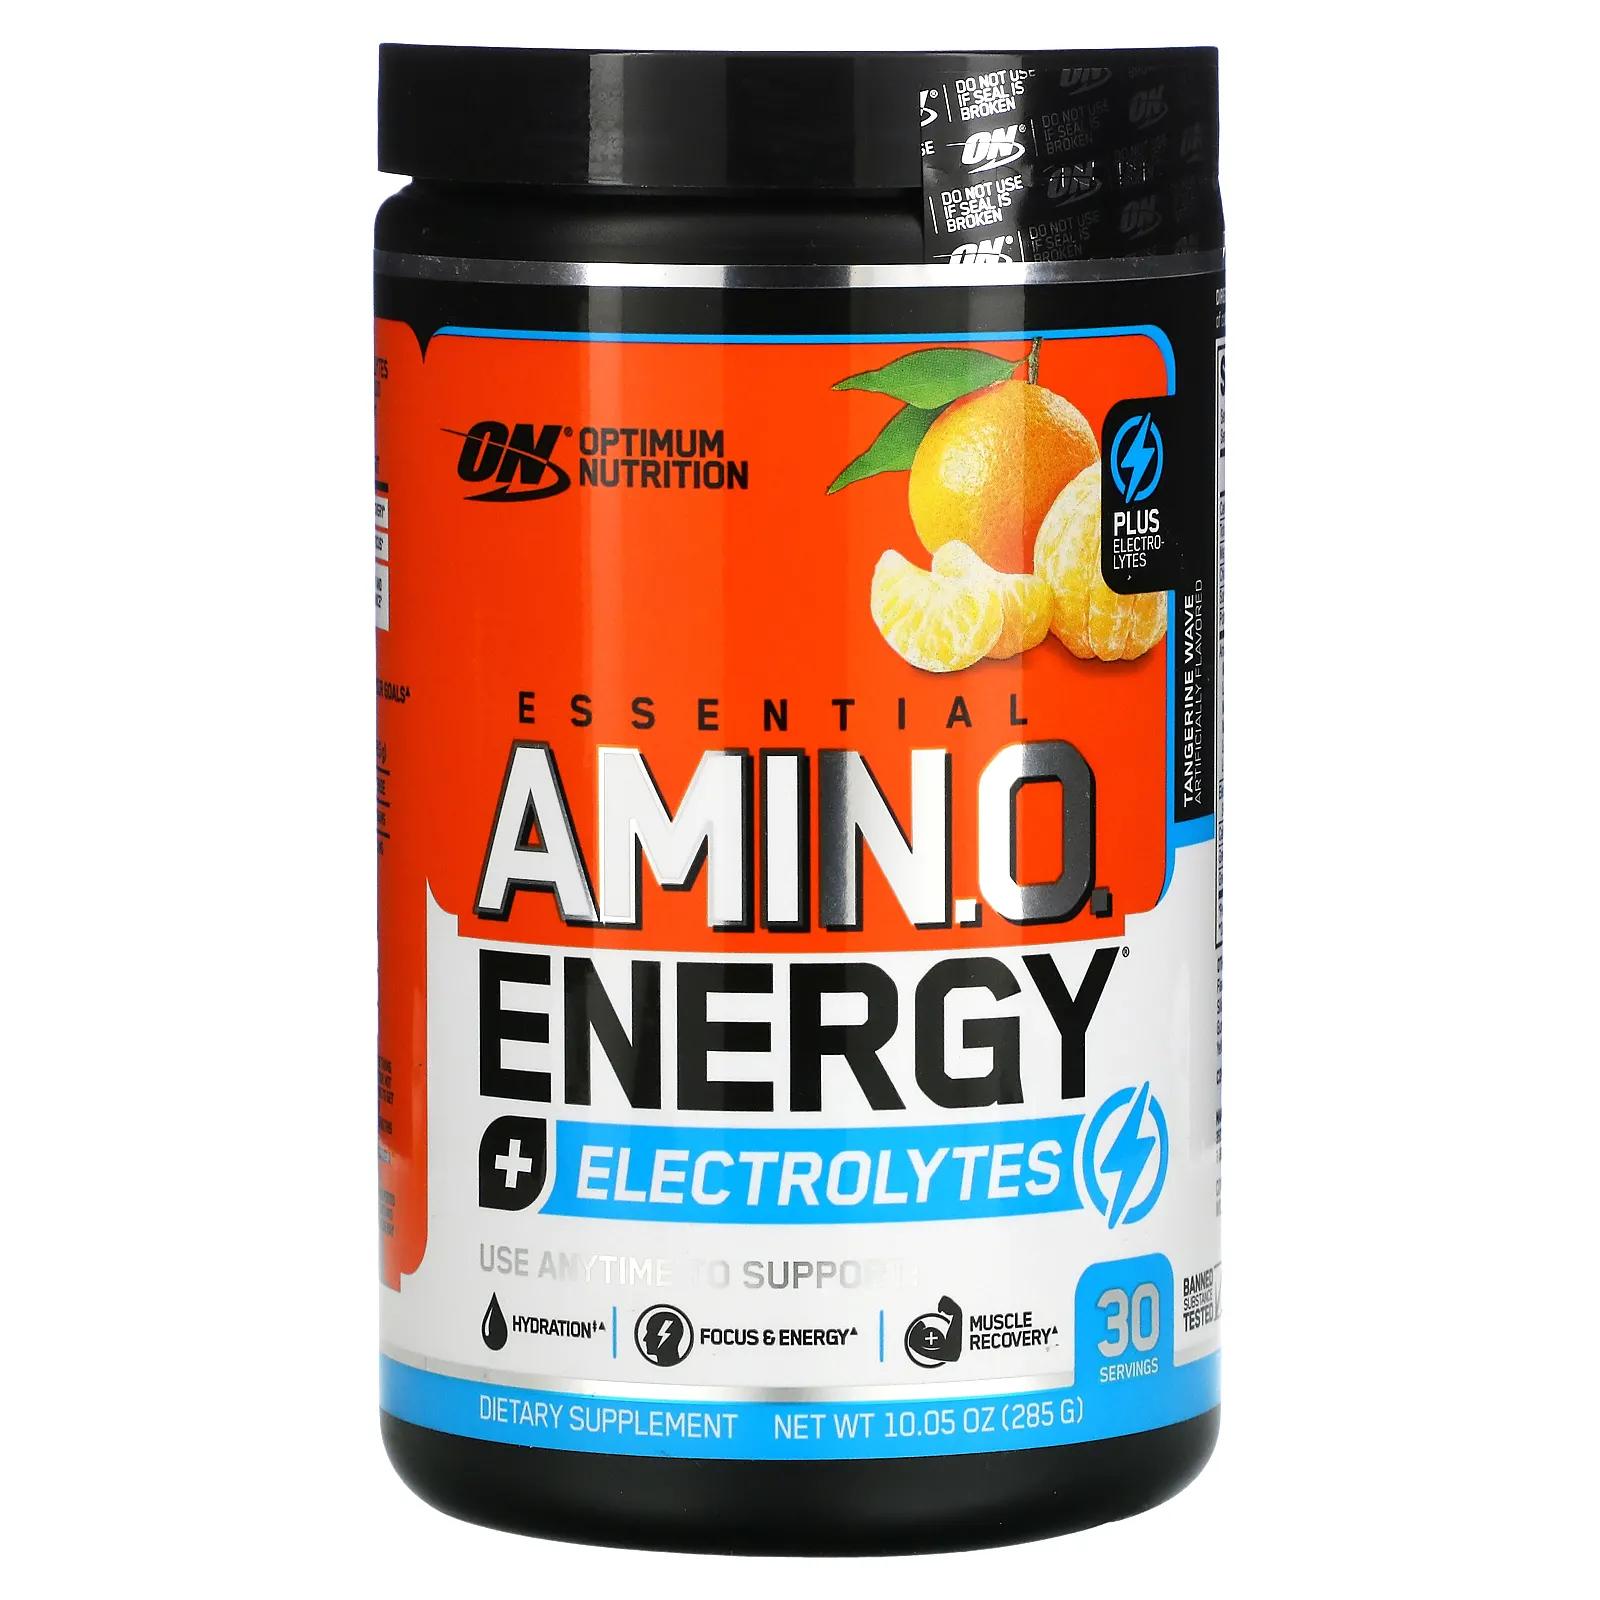 optimum nutrition essential amino energy electrolytes tangerine wave 10 05 oz 285 g Optimum Nutrition Essential Amino Energy + Electrolytes Tangerine Wave 10.05 oz (285 g)